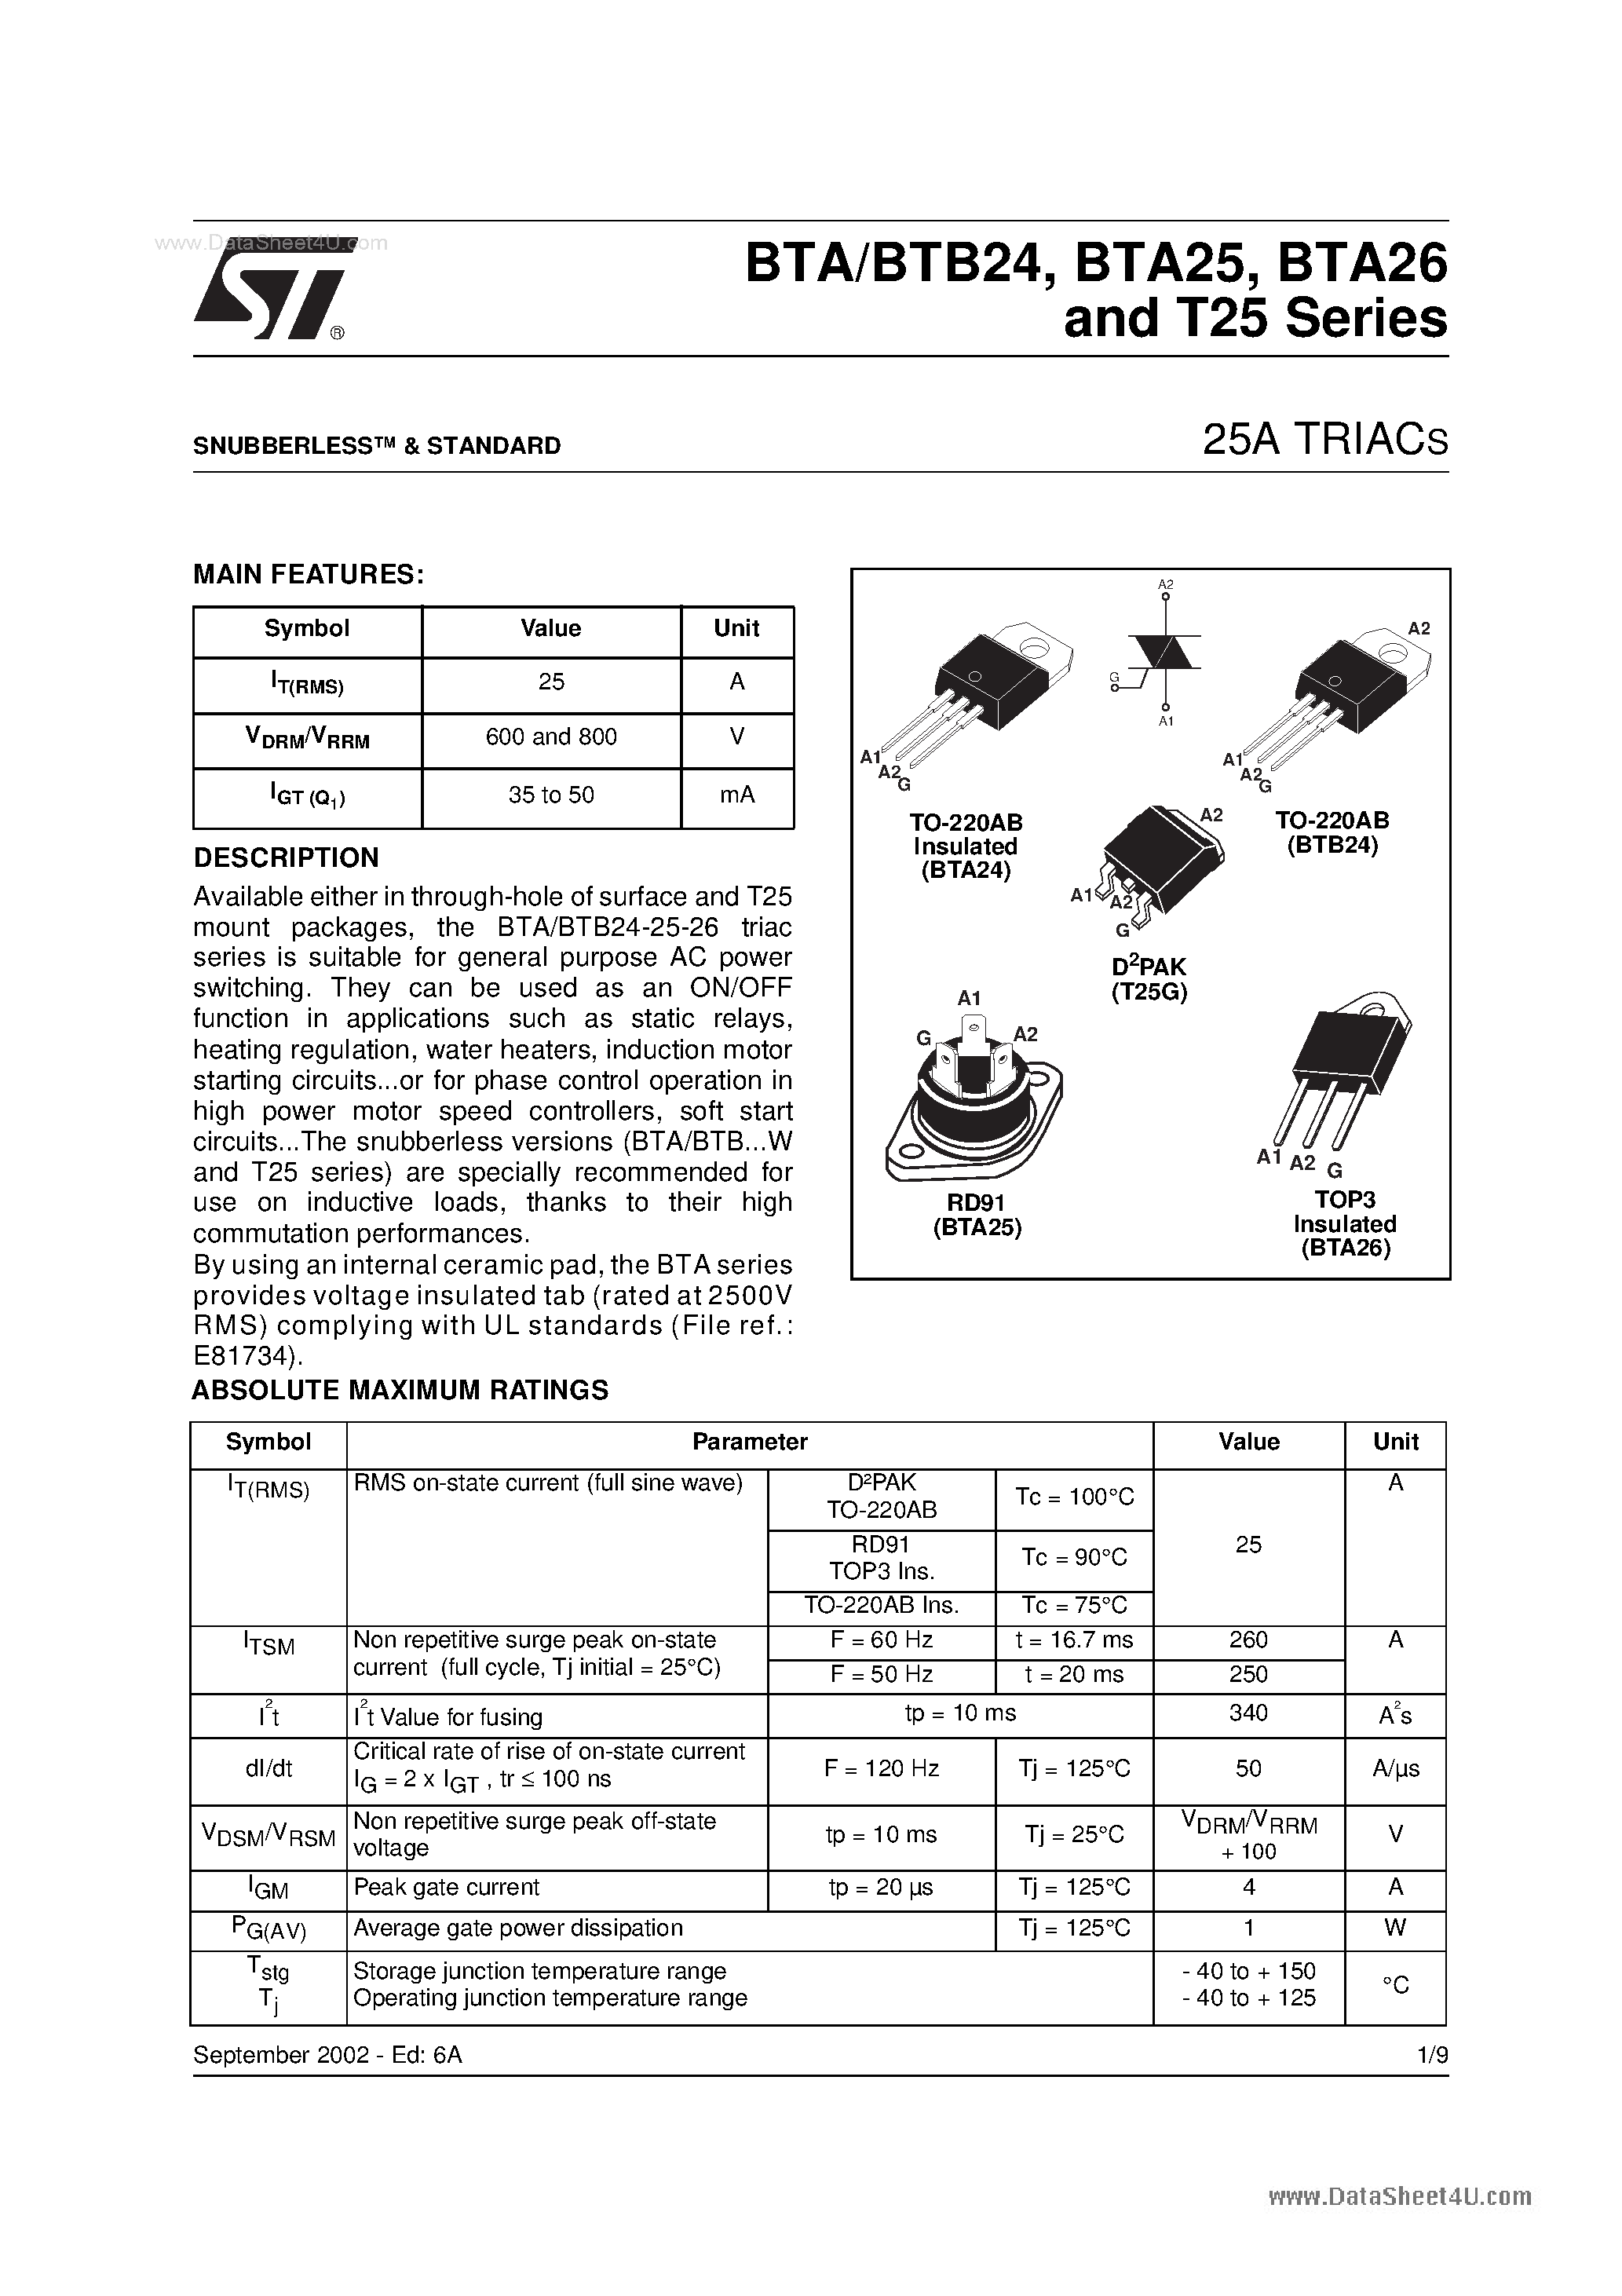 Datasheet BTA26-800A - 25A Triacs page 1